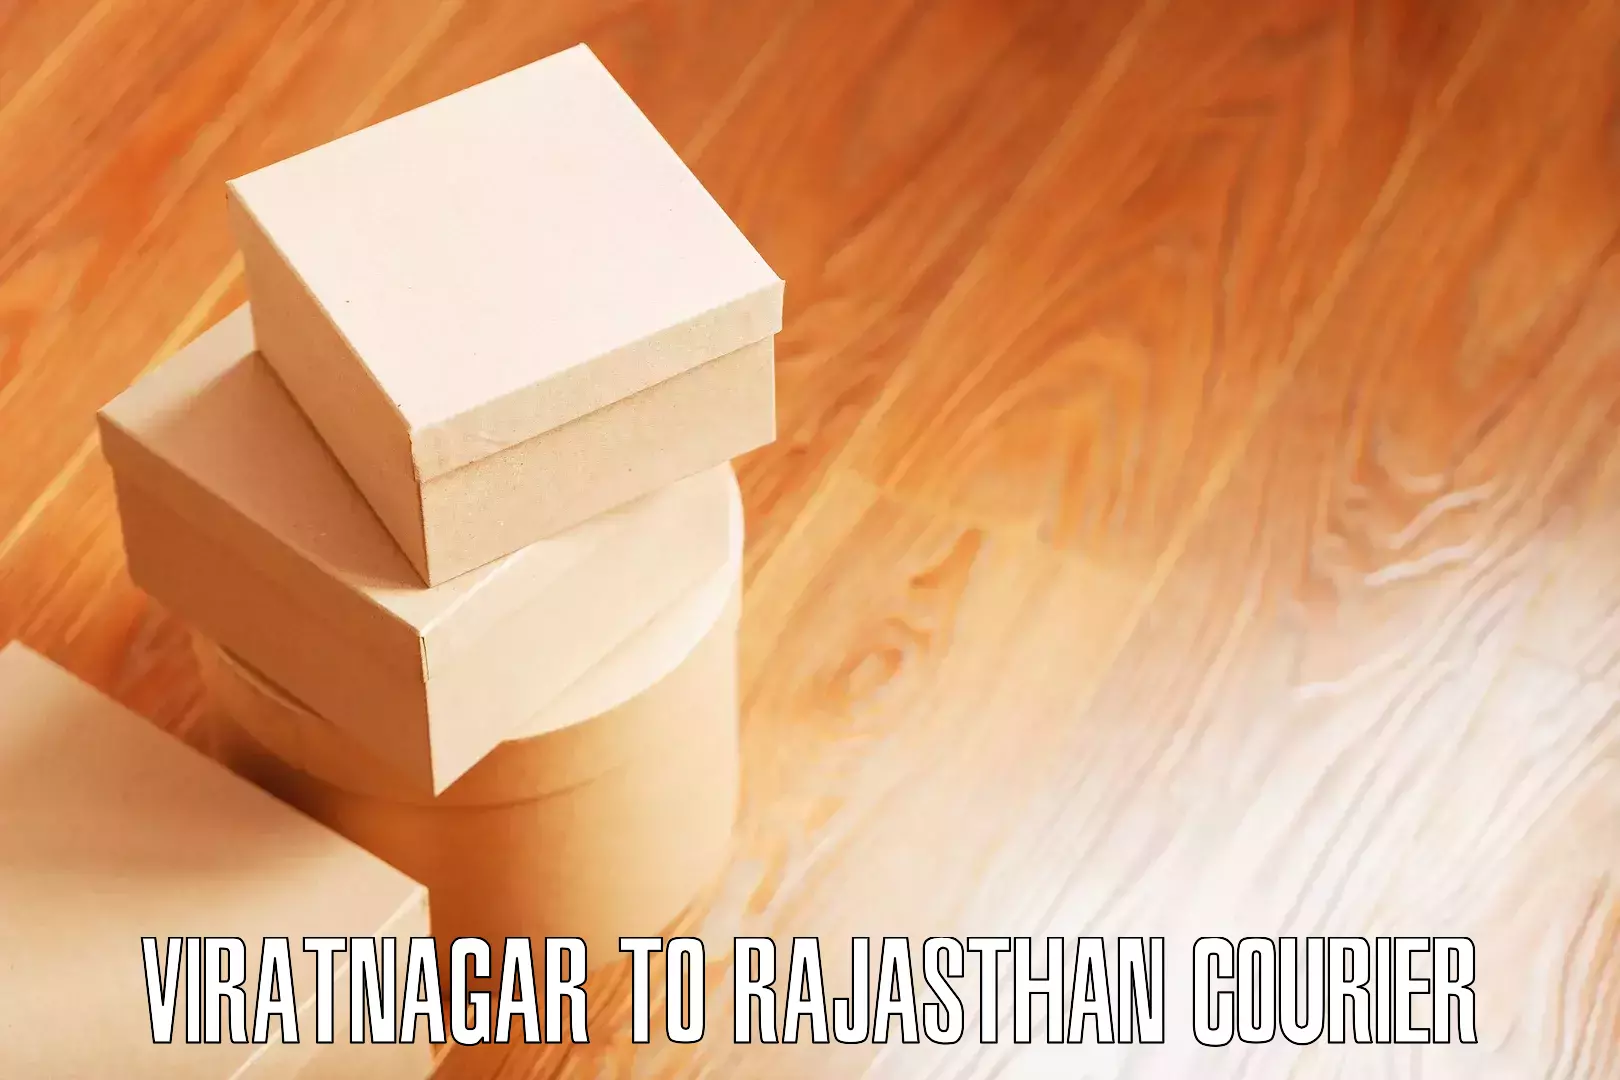 Efficient packing and moving Viratnagar to Bagidora